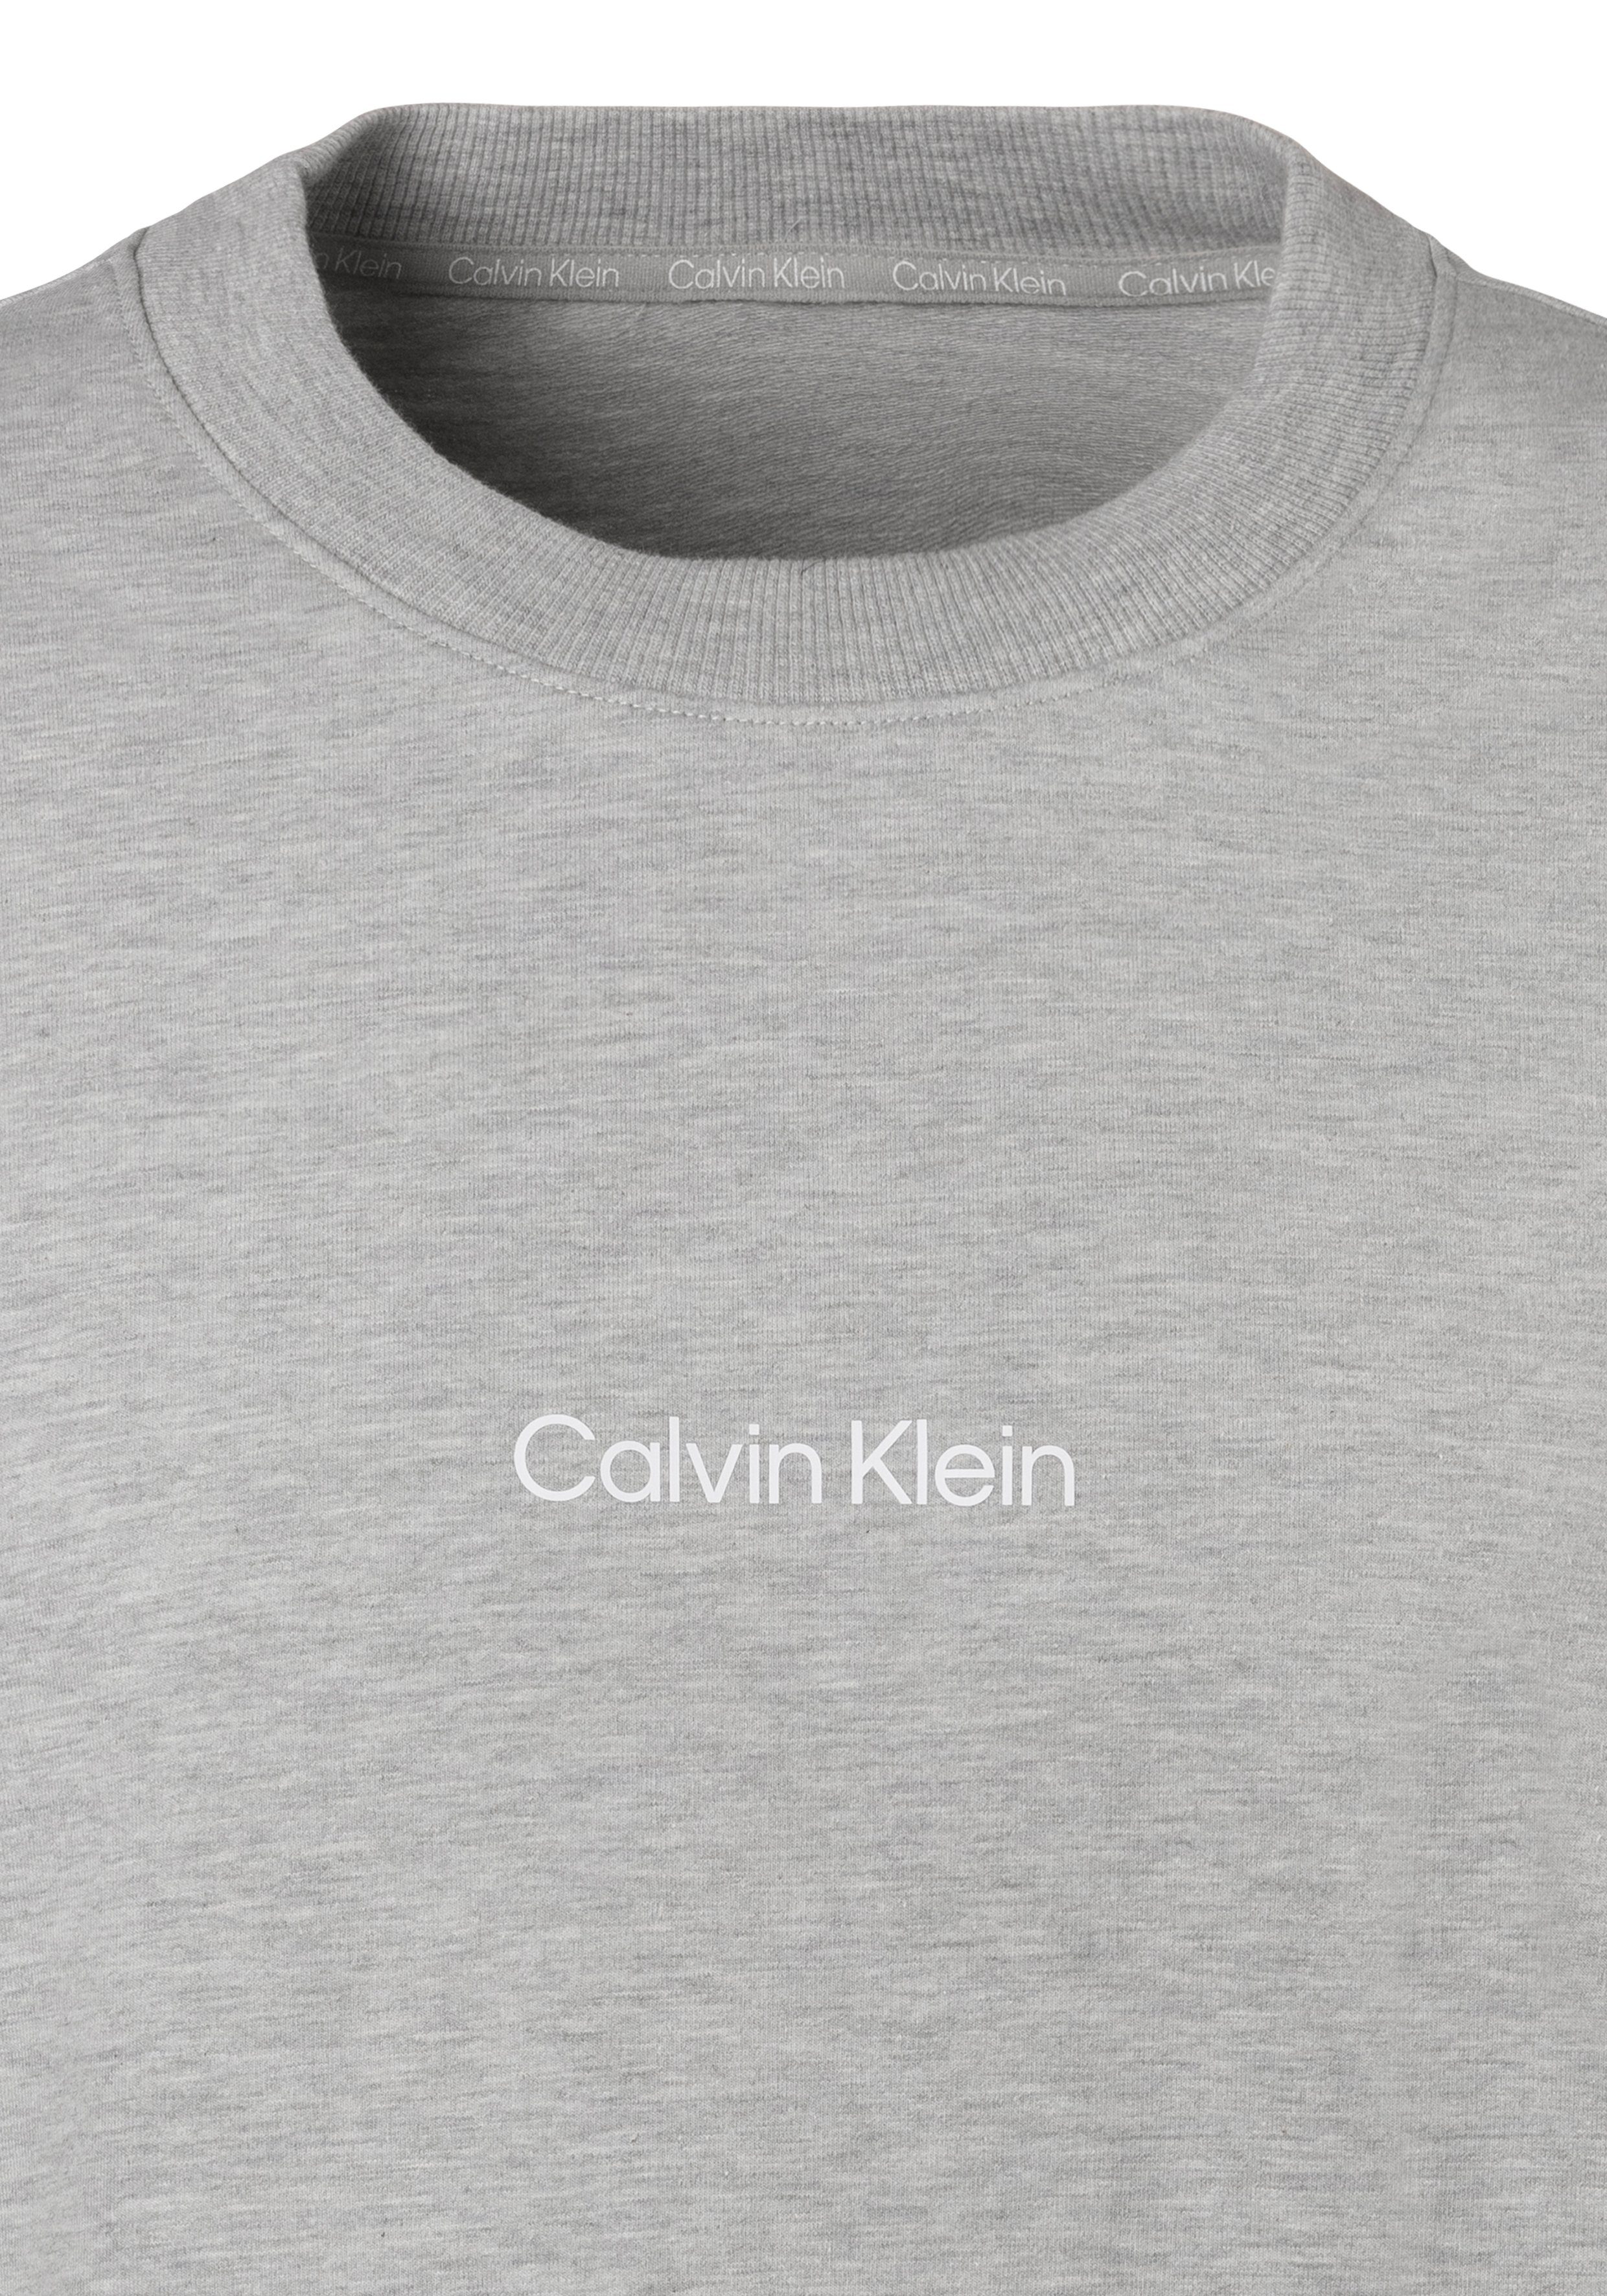 grau-meliert vorn Klein Calvin Underwear Sweatshirt Logodruck mit